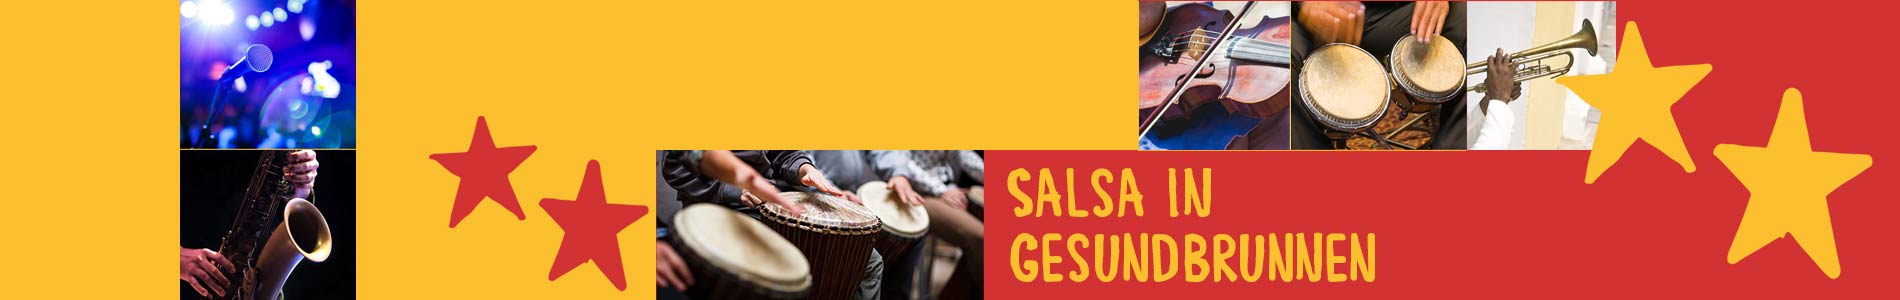 Salsa in Gesundbrunnen – Salsa lernen und tanzen, Tanzkurse, Partys, Veranstaltungen